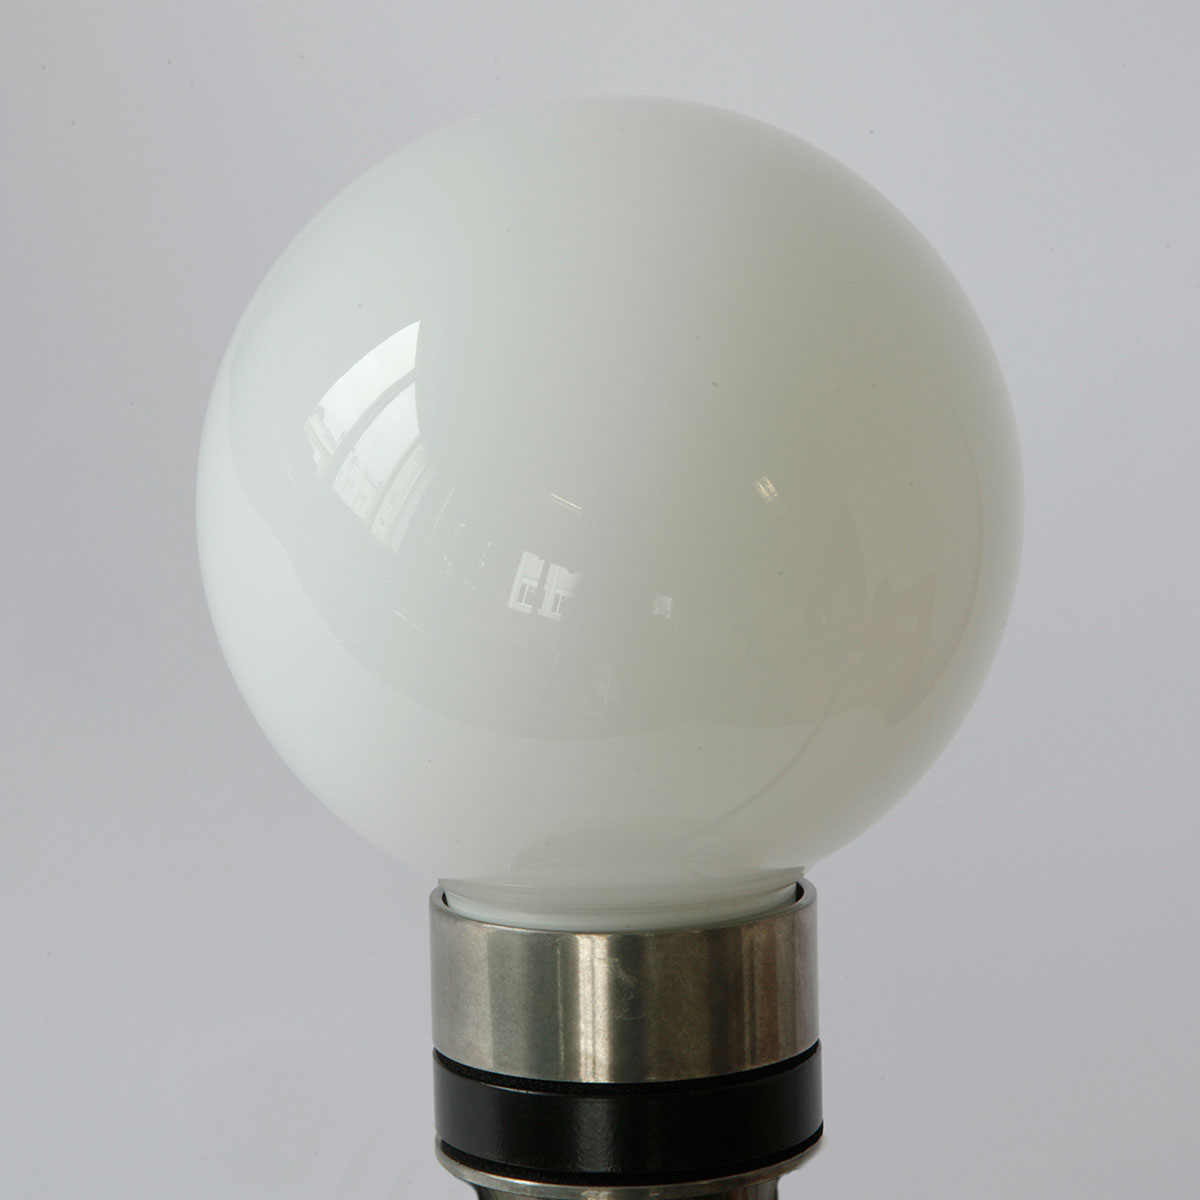 Bad-Wandlampe mit zwei Glaskugeln (klares, prismatisches, opales Glas), IP65: Messing alt-silbern (patiniert), opales Glas